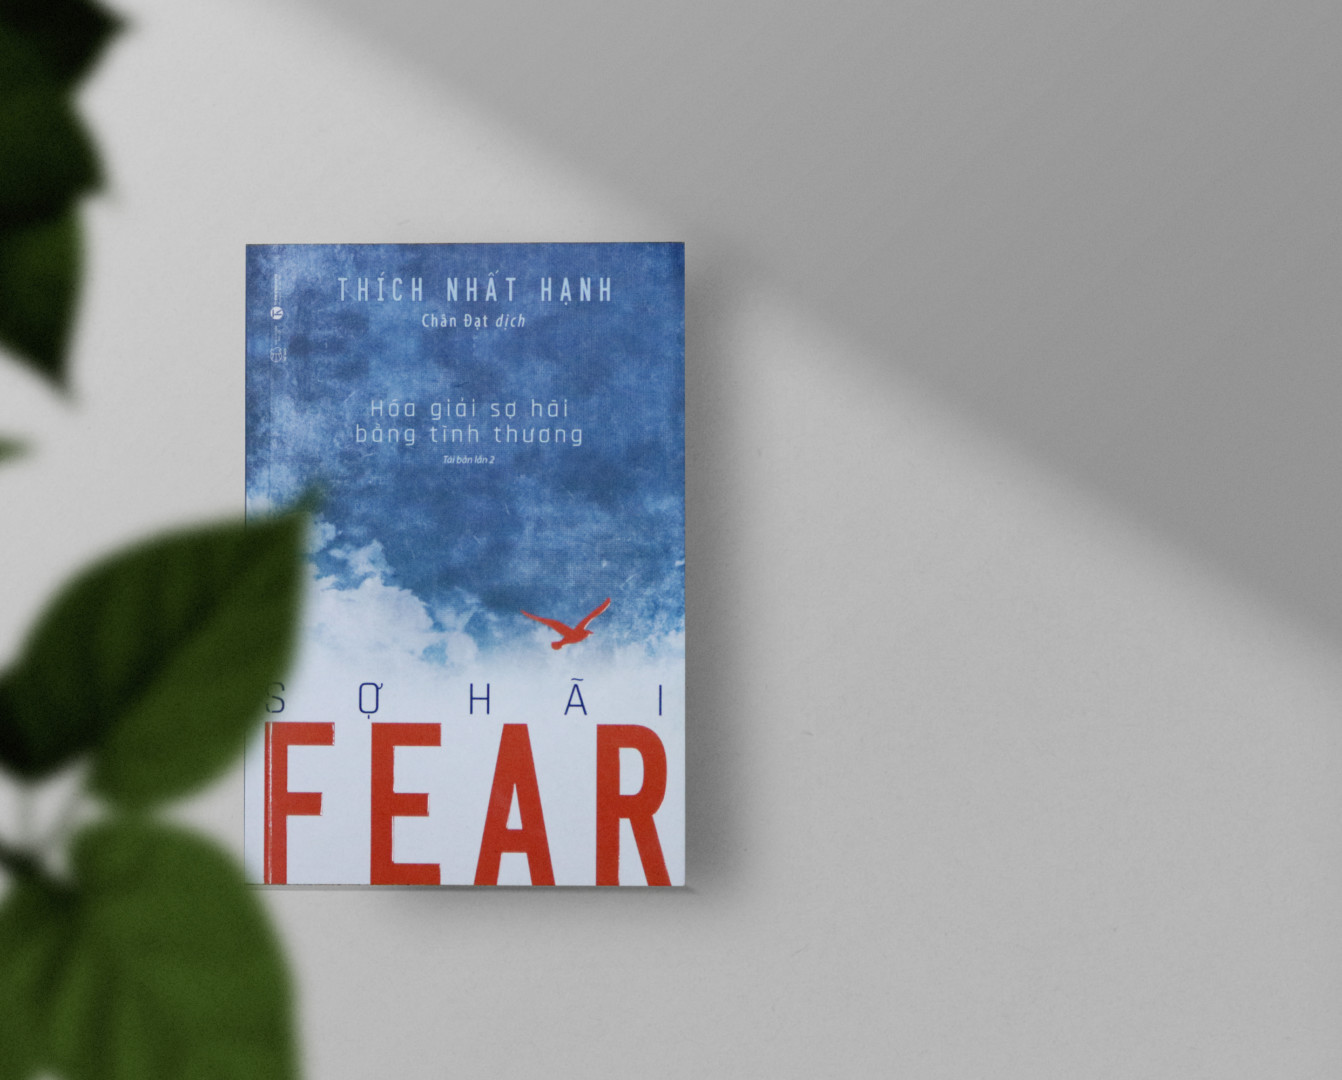 Fear – Hóa giải sợ hãi bằng tình thương